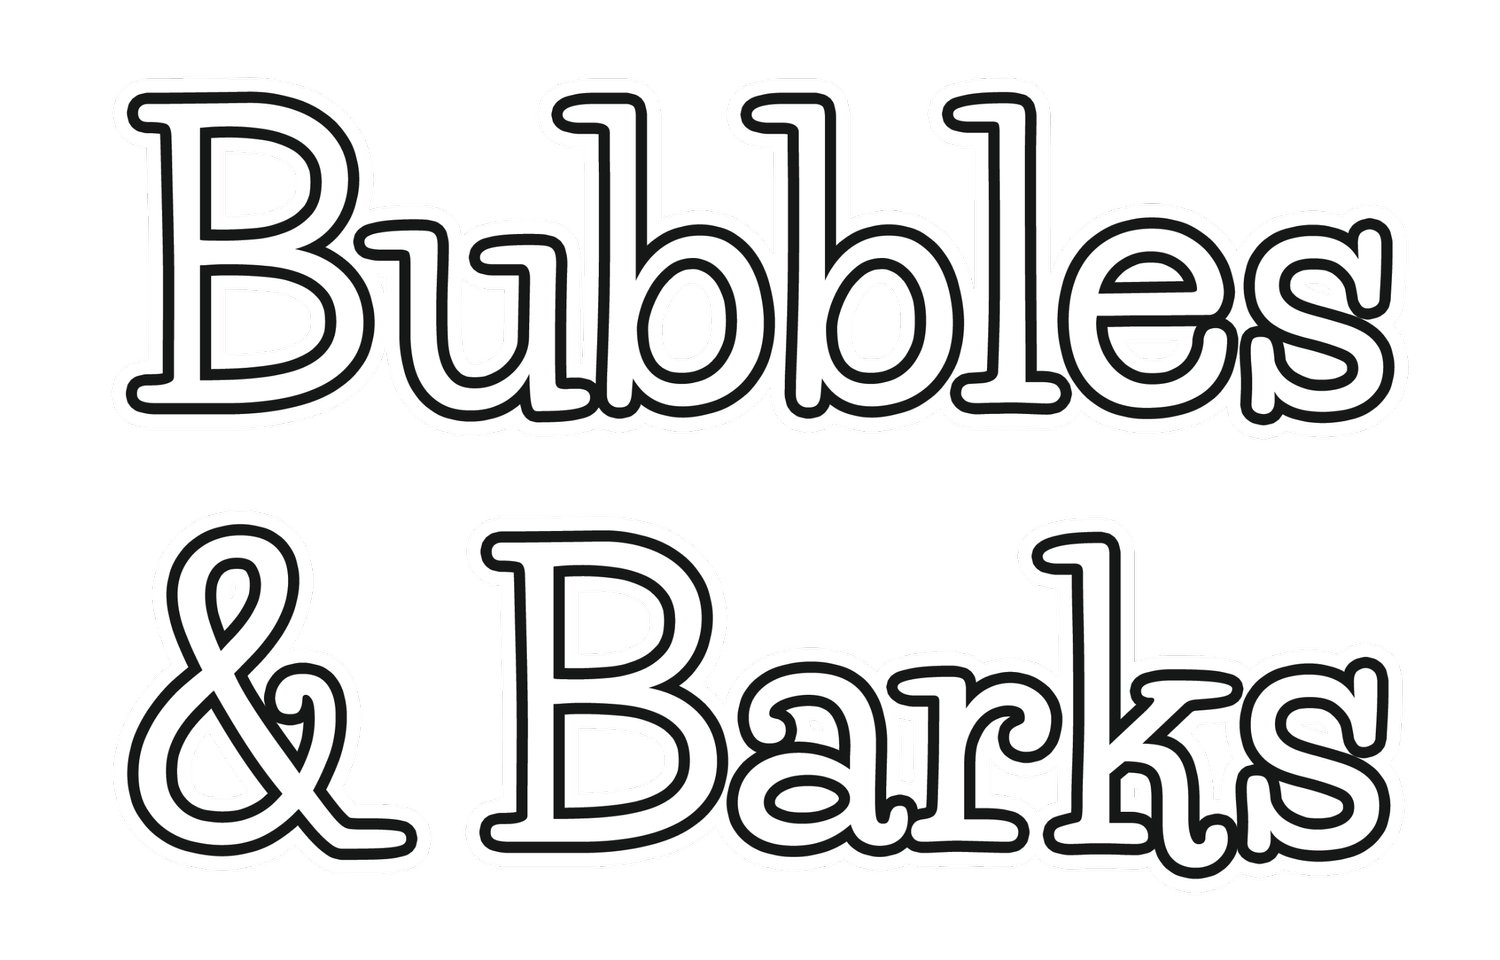 Bubbles & Barks